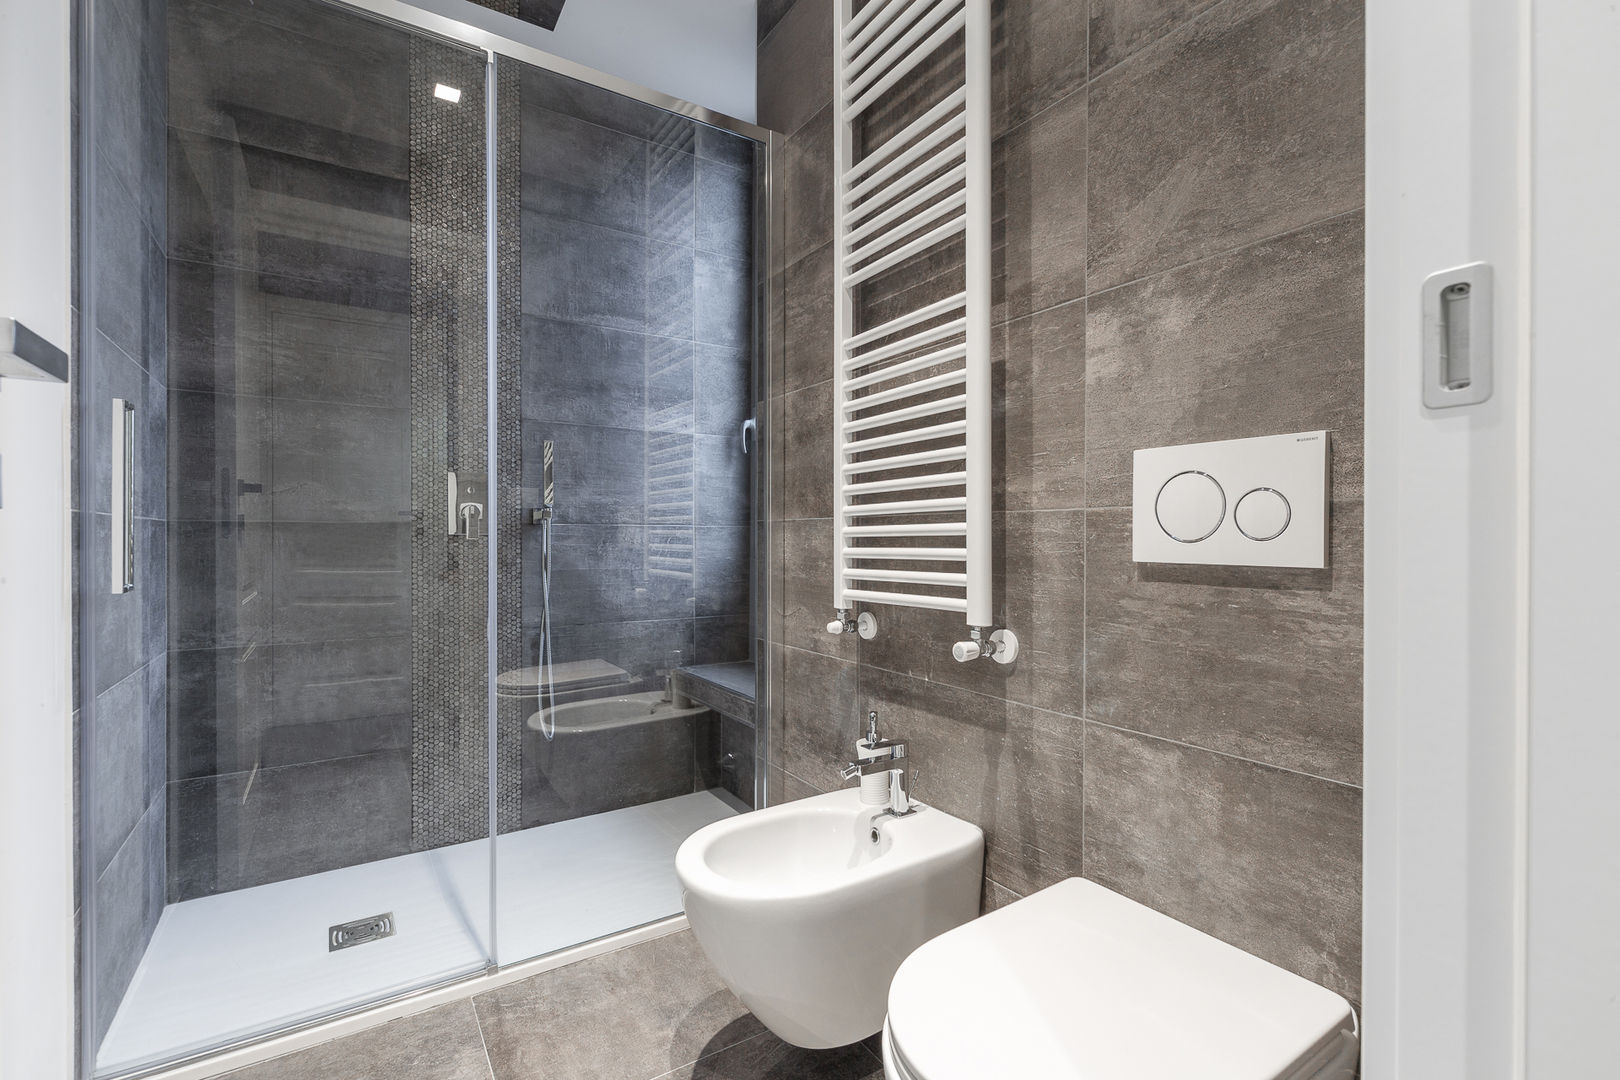 Bagno in pietra naturale Yome - your tailored home Bagno in stile classico spa, cabina doccia, Porcelanosa